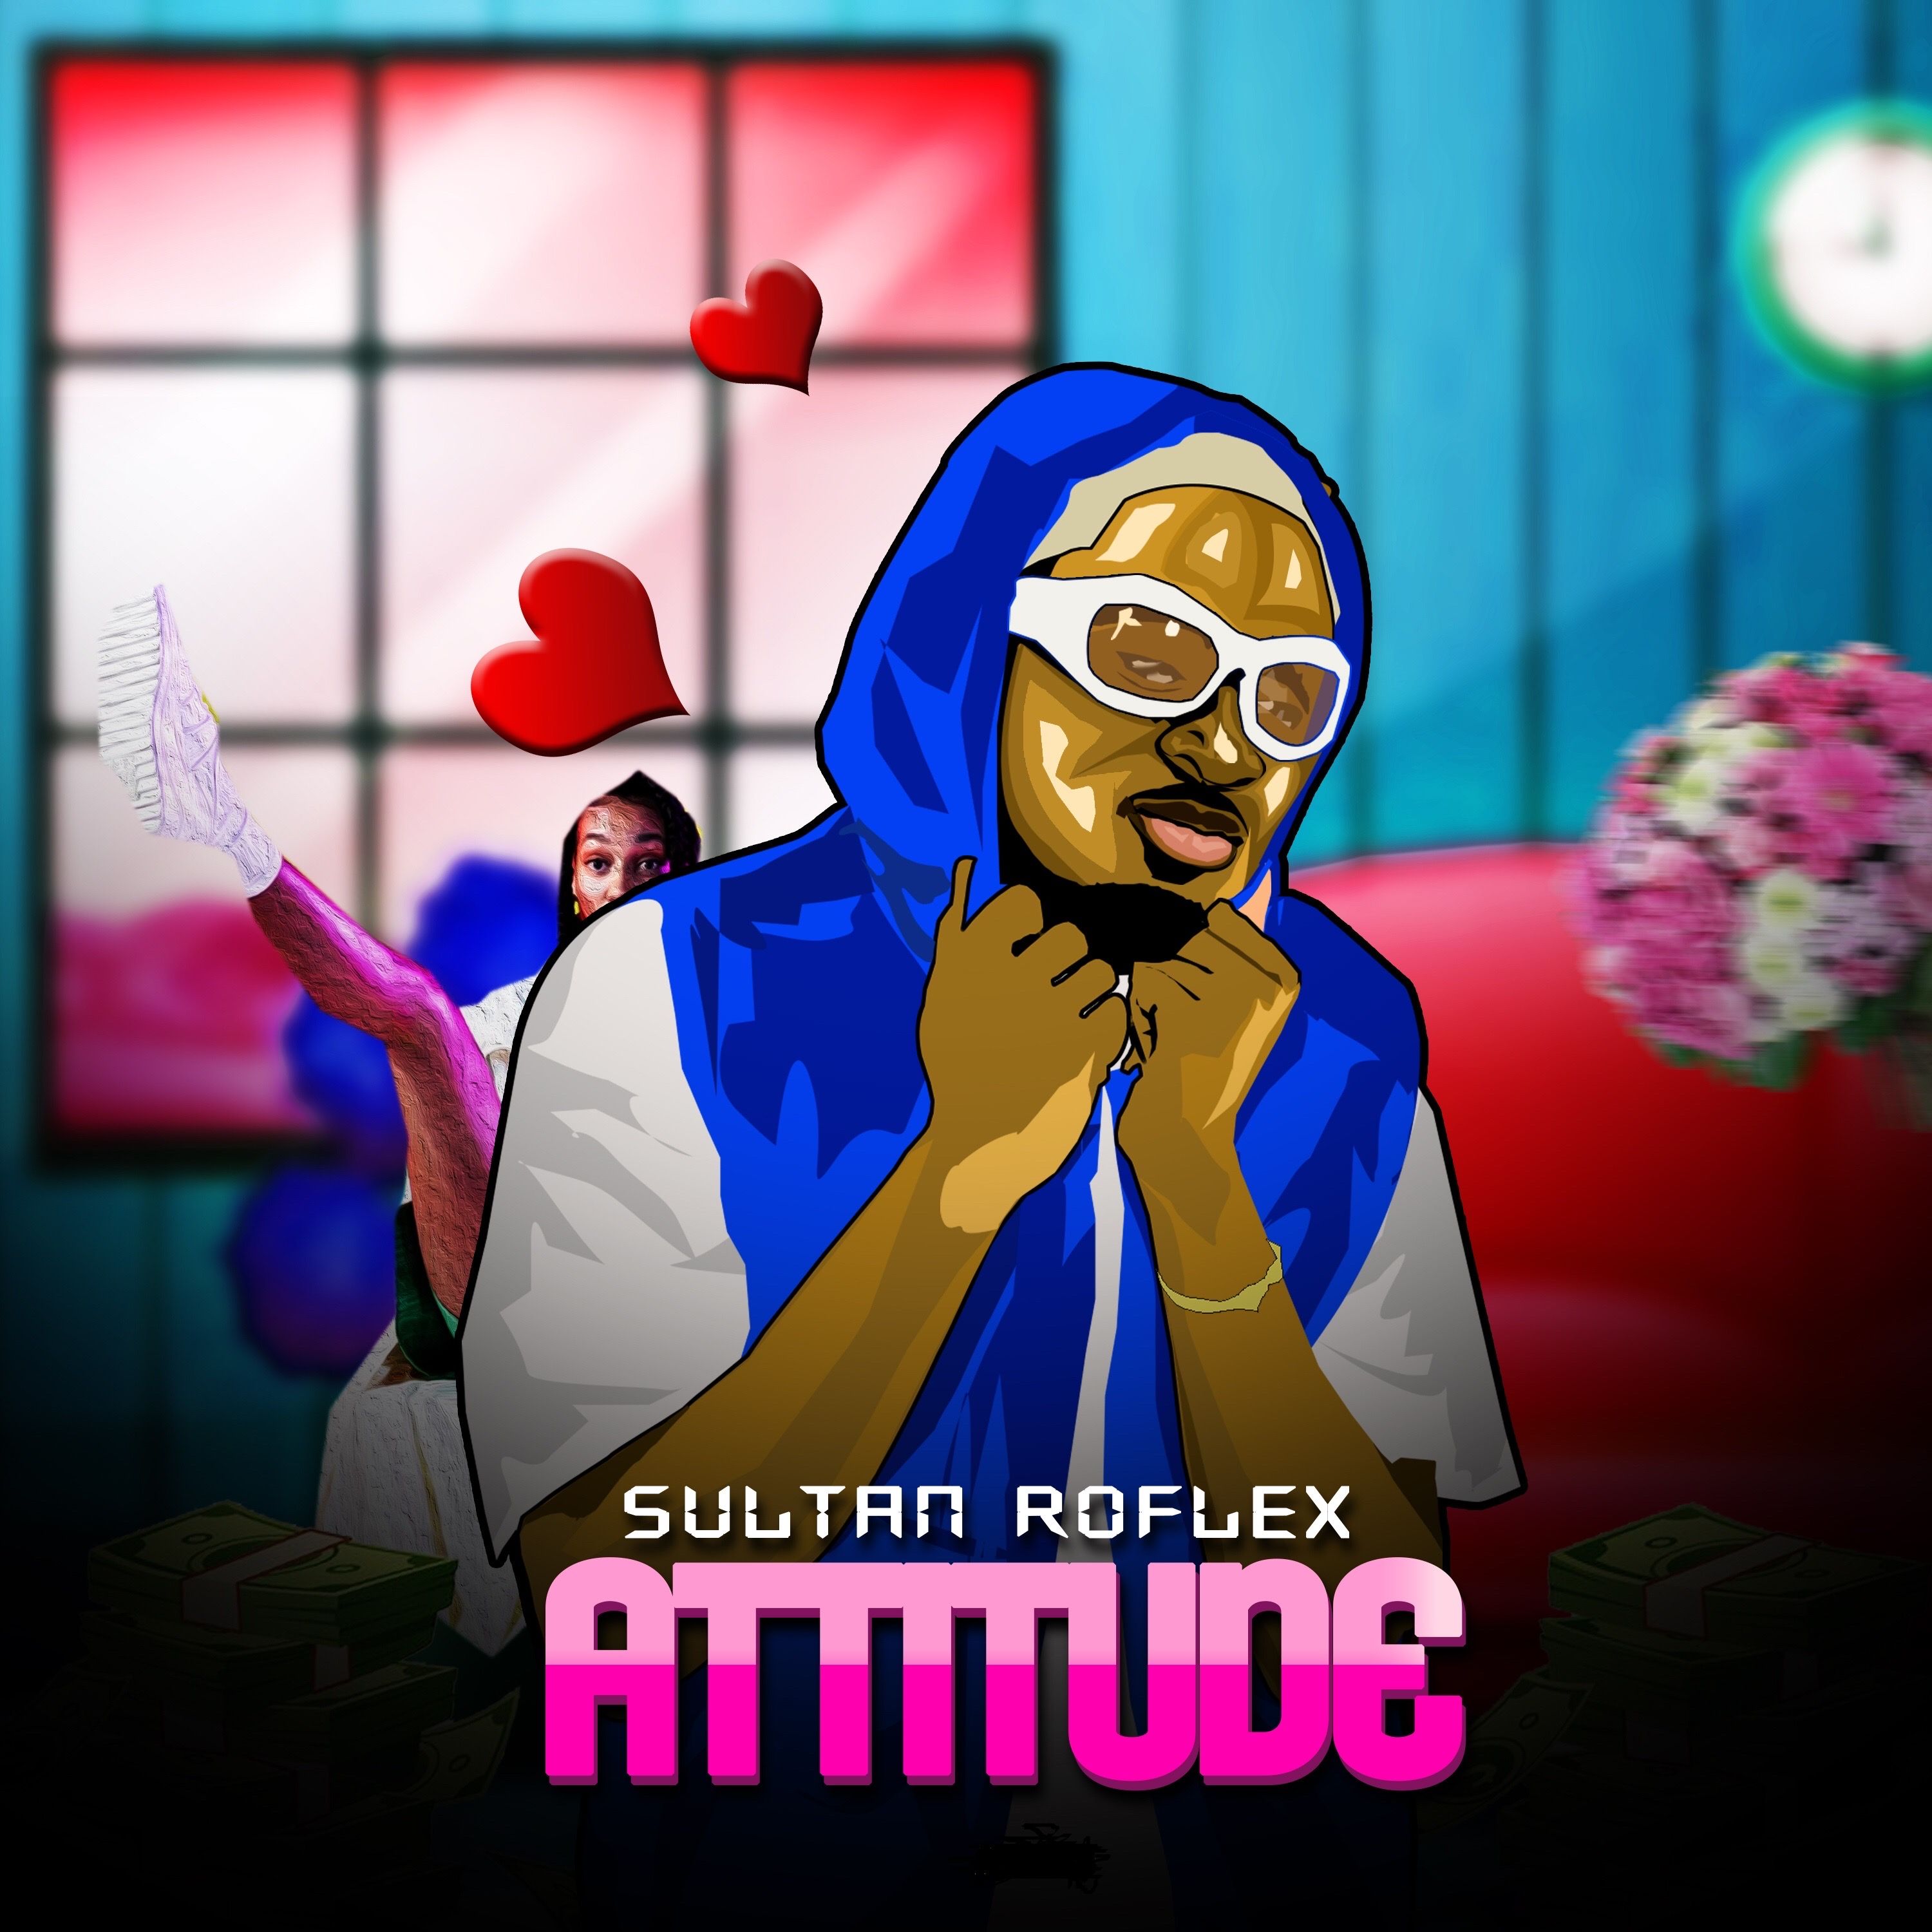 Sultan Roflex - Attitude